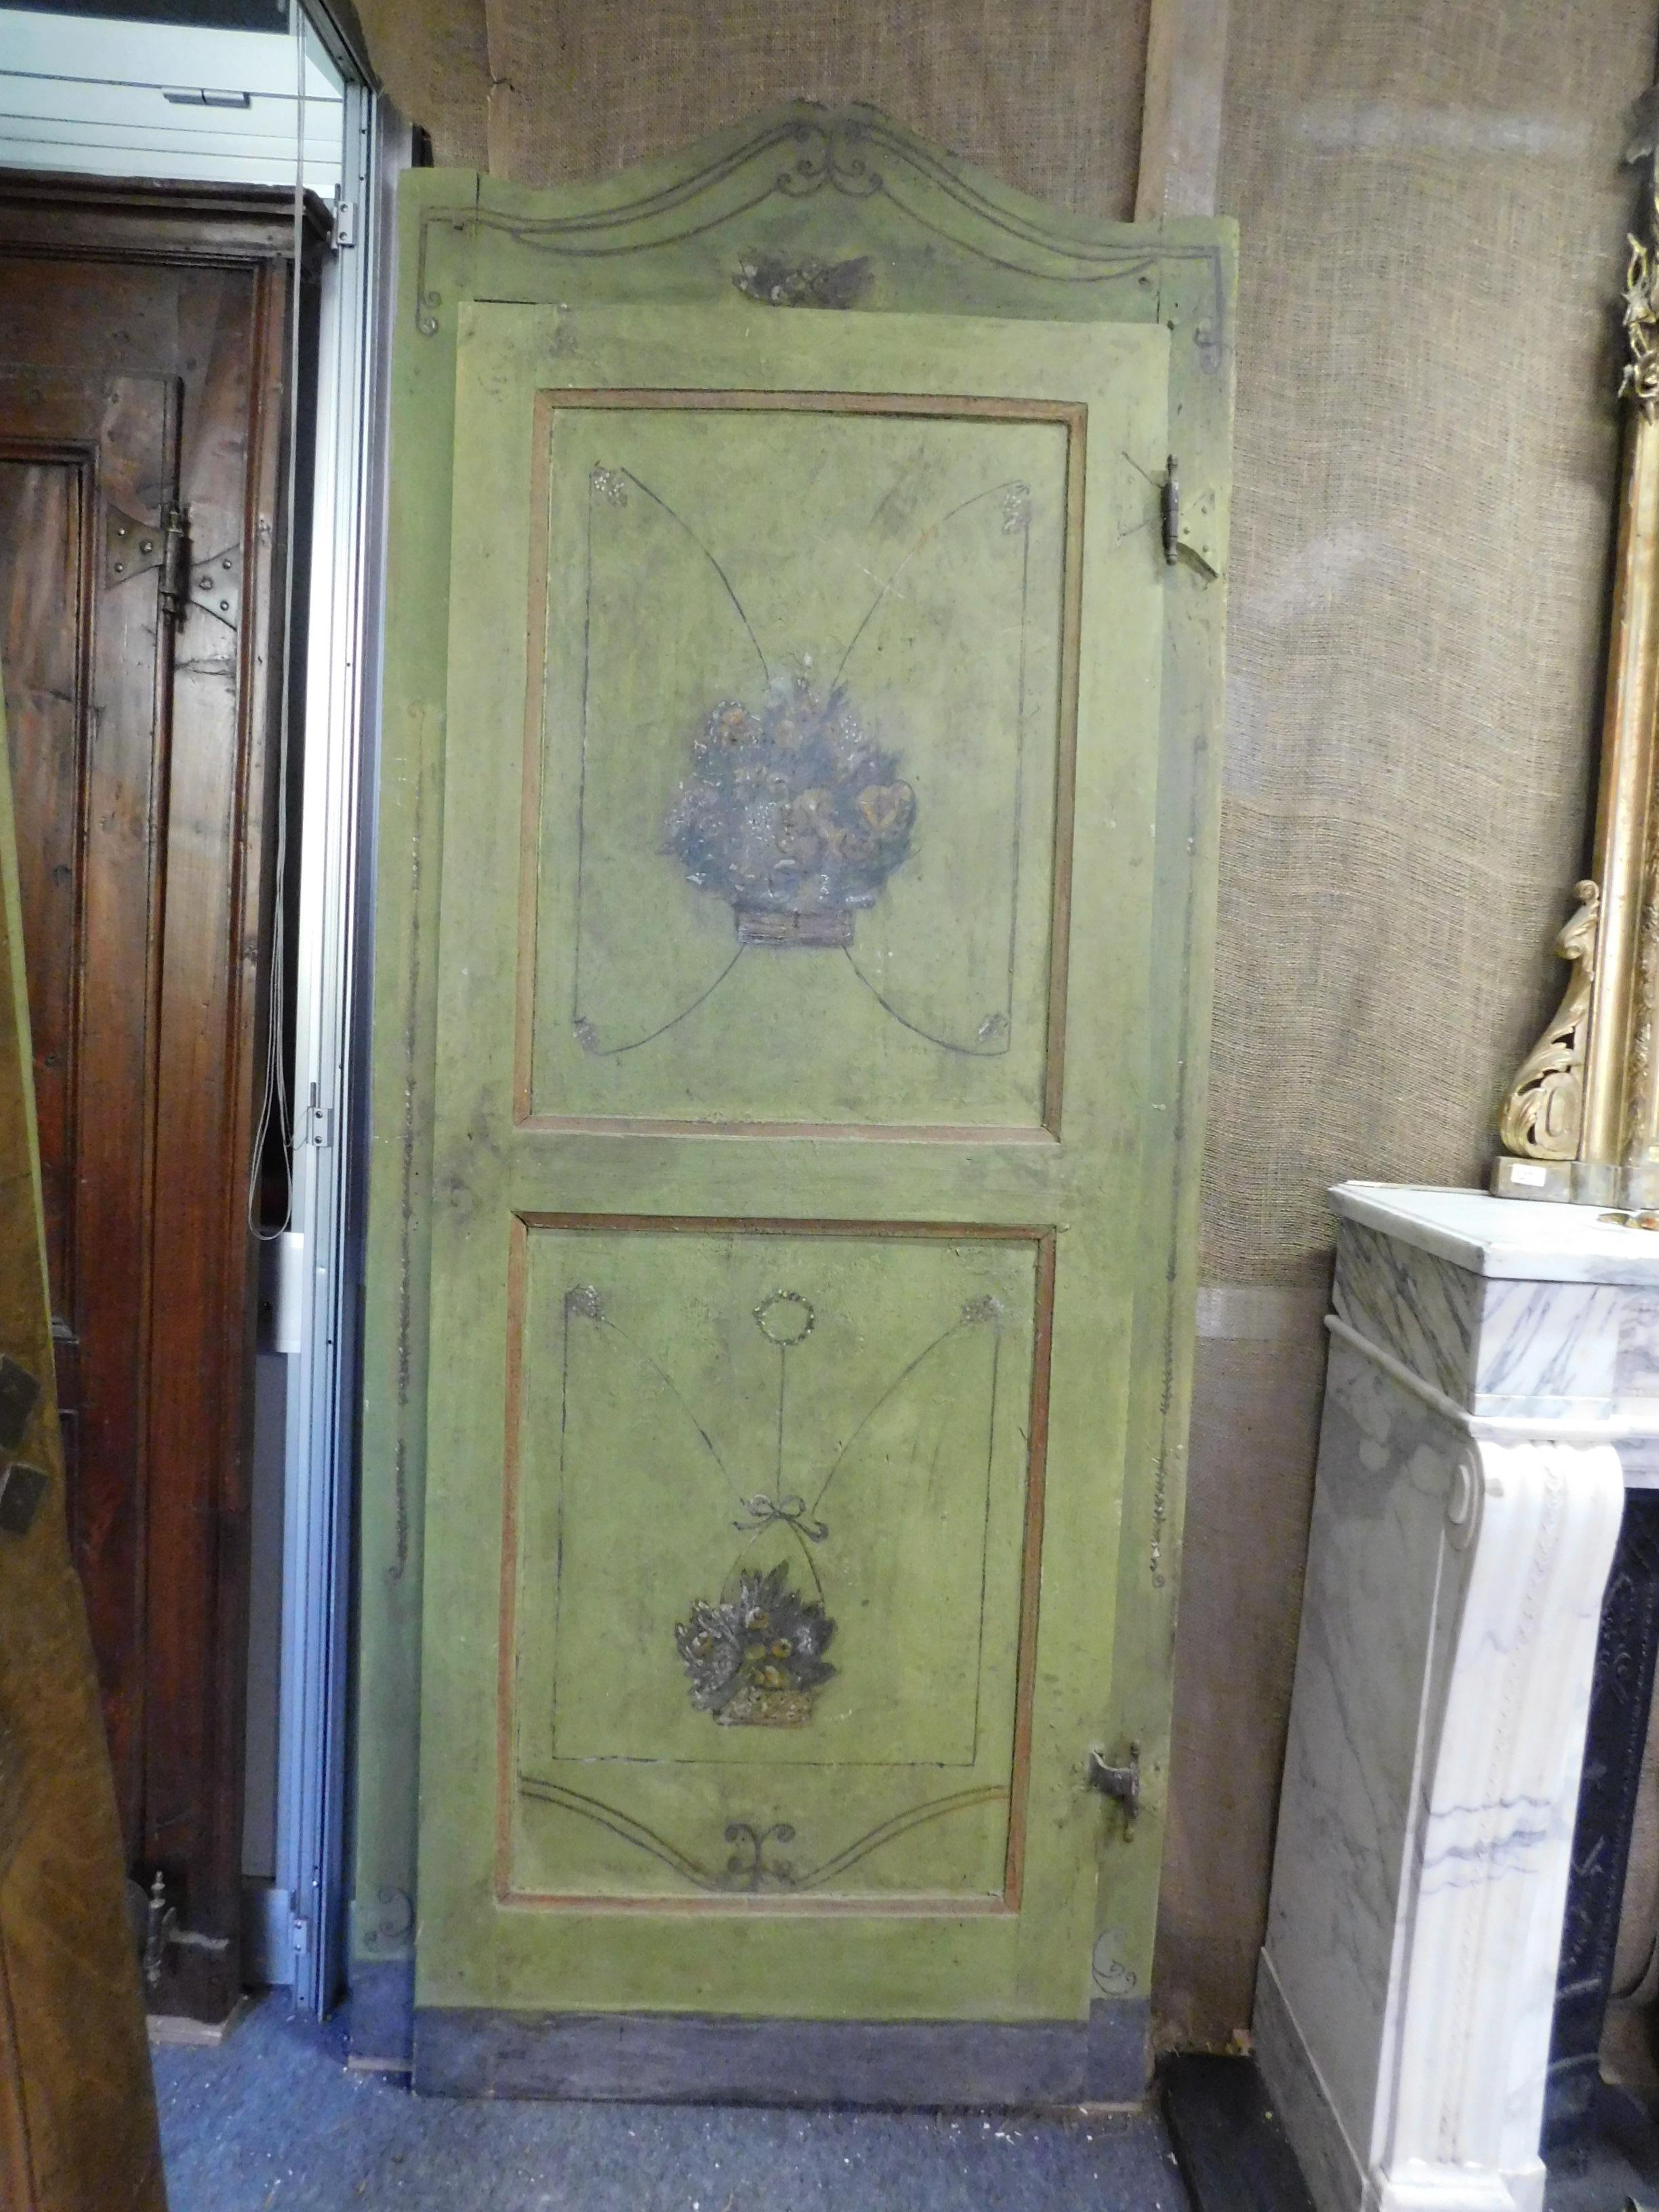 Ensemble de 2 portes vertes anciennes, laquées et peintes à la main, avec des motifs floraux et complètes avec cadre ondulé, beaux fers d'origine et patine d'époque, construites entièrement à la main au 18ème siècle pour une maison en Italie